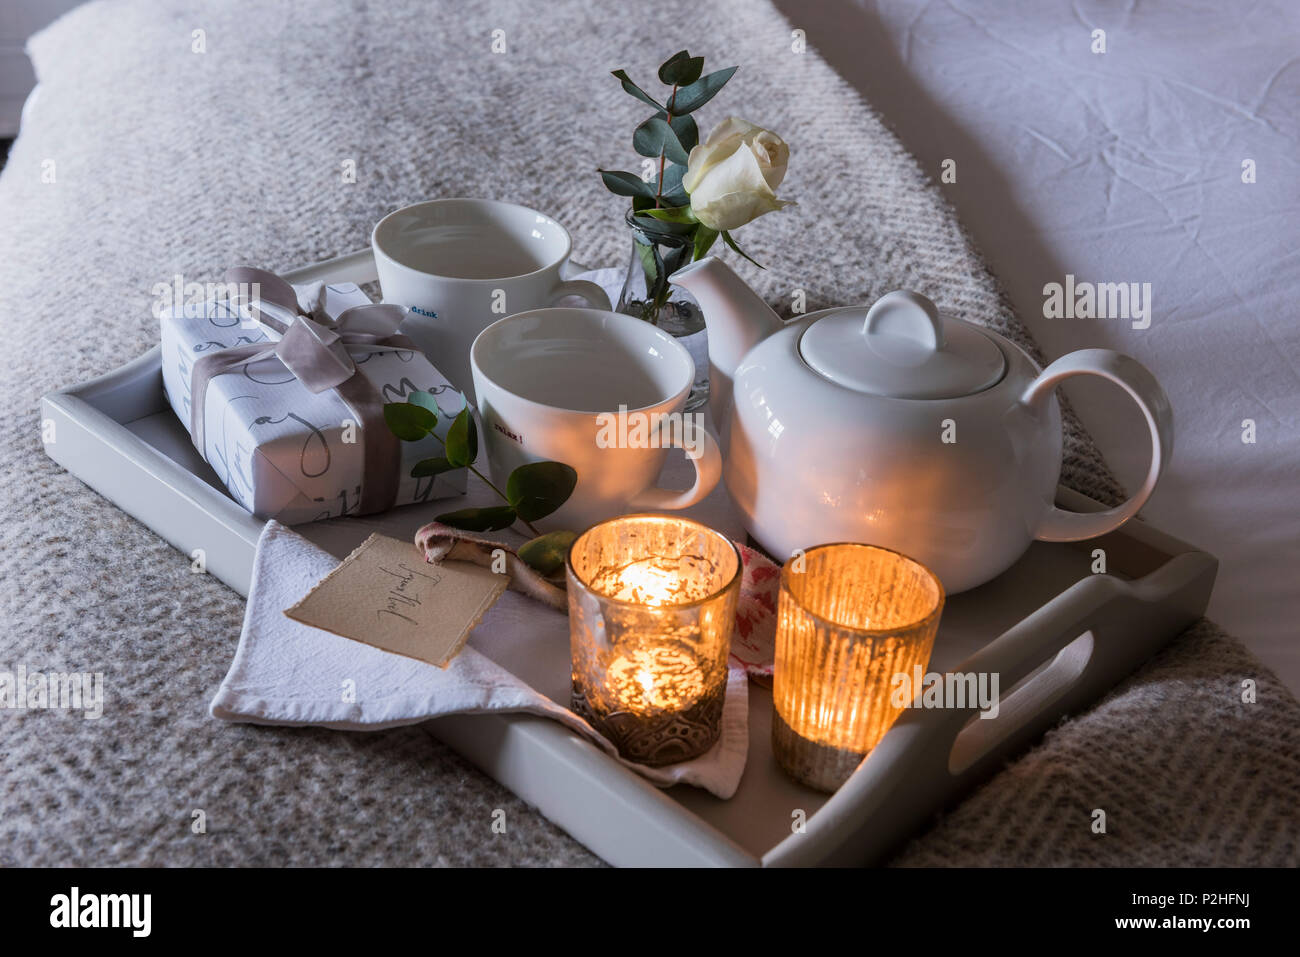 Detalle de una candelita encendida bandeja de desayuno con pequeños envuelto presente y la rosa blanca. Foto de stock